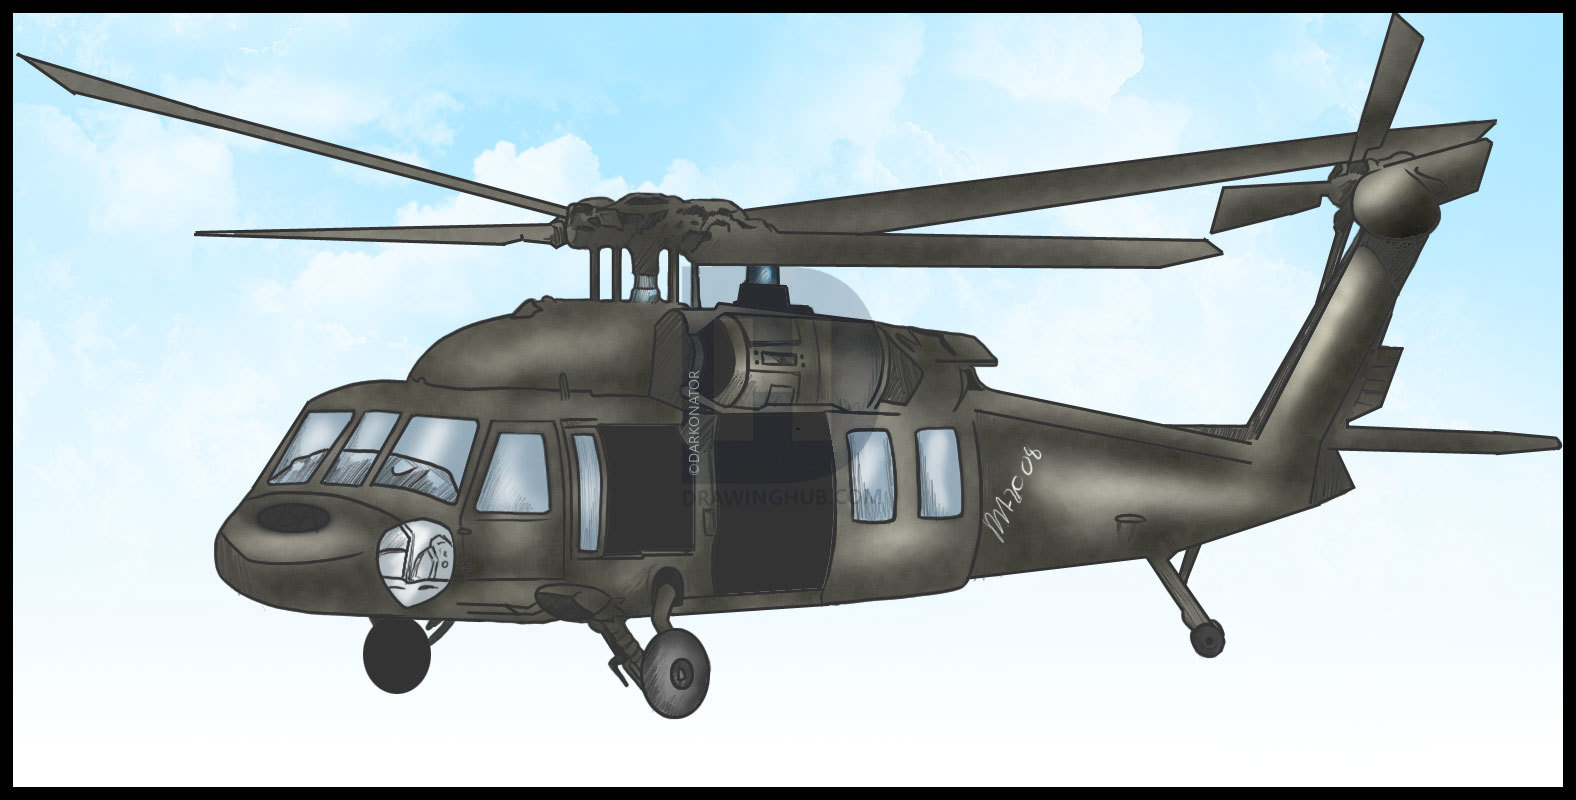 Военный вертолет для детей